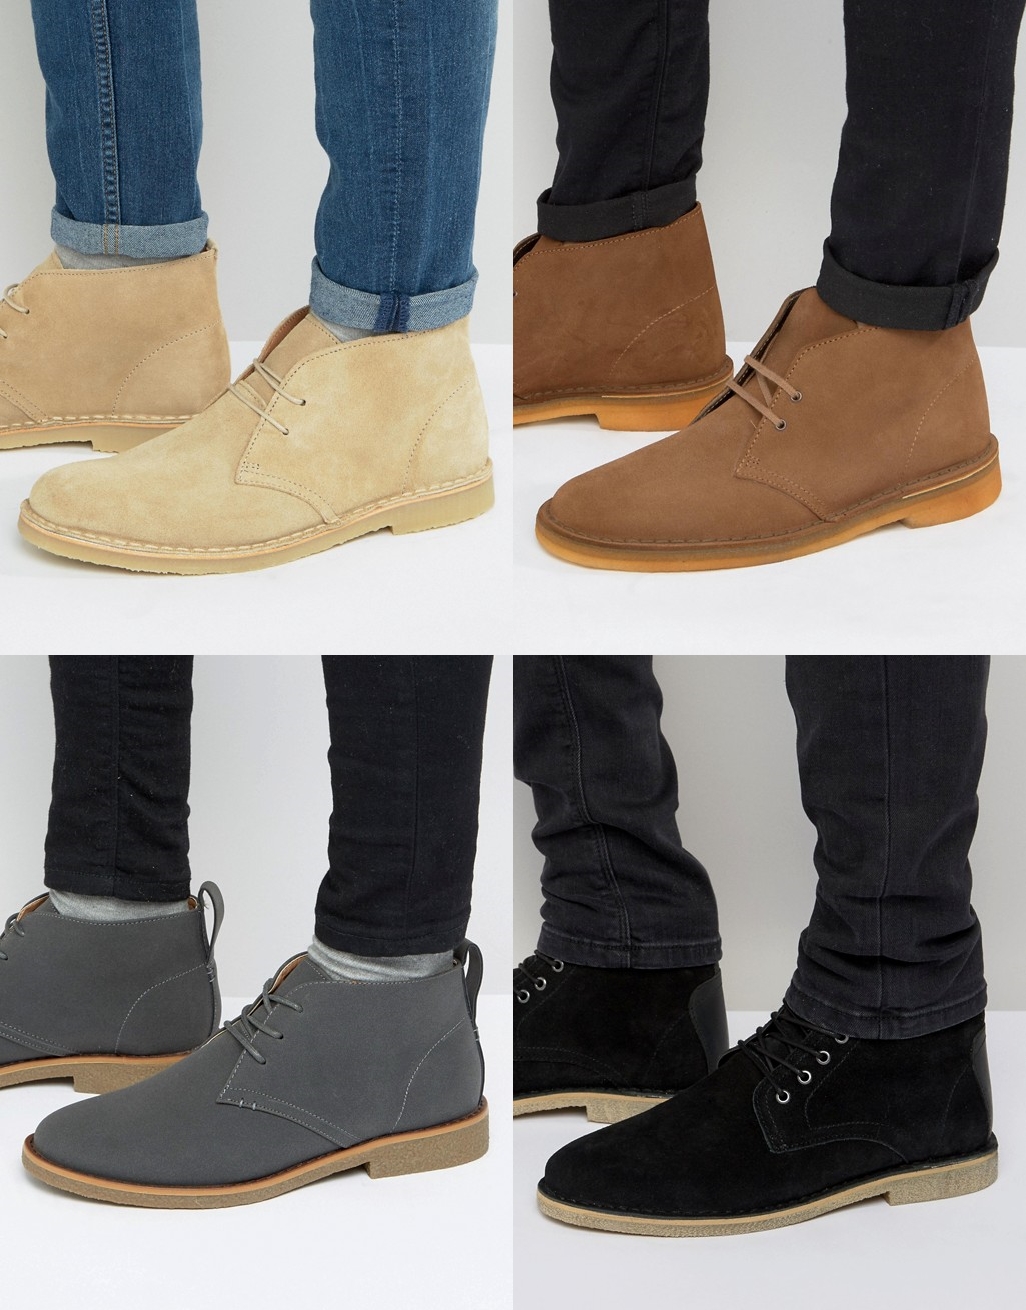 bota masculina 2017, bota para homens, modelo de bota, bota de camurça, desert boot, blog de moda masculina, moda sem censura, alex cursino, dicas de estilo masculino